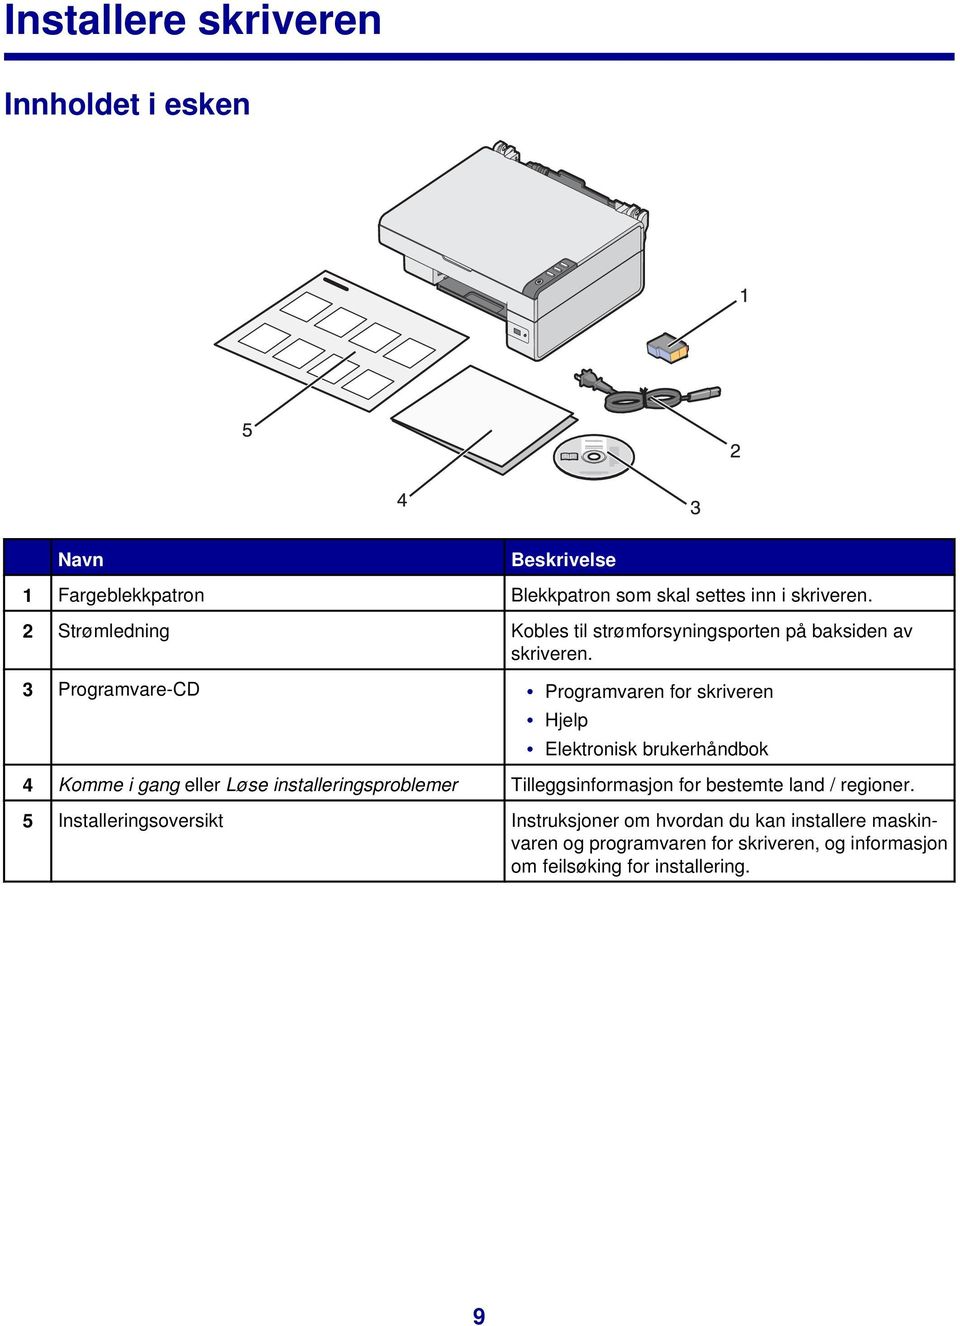 3 Programvare-CD Programvaren for skriveren Hjelp Elektronisk brukerhåndbok 4 Komme i gang eller Løse installeringsproblemer